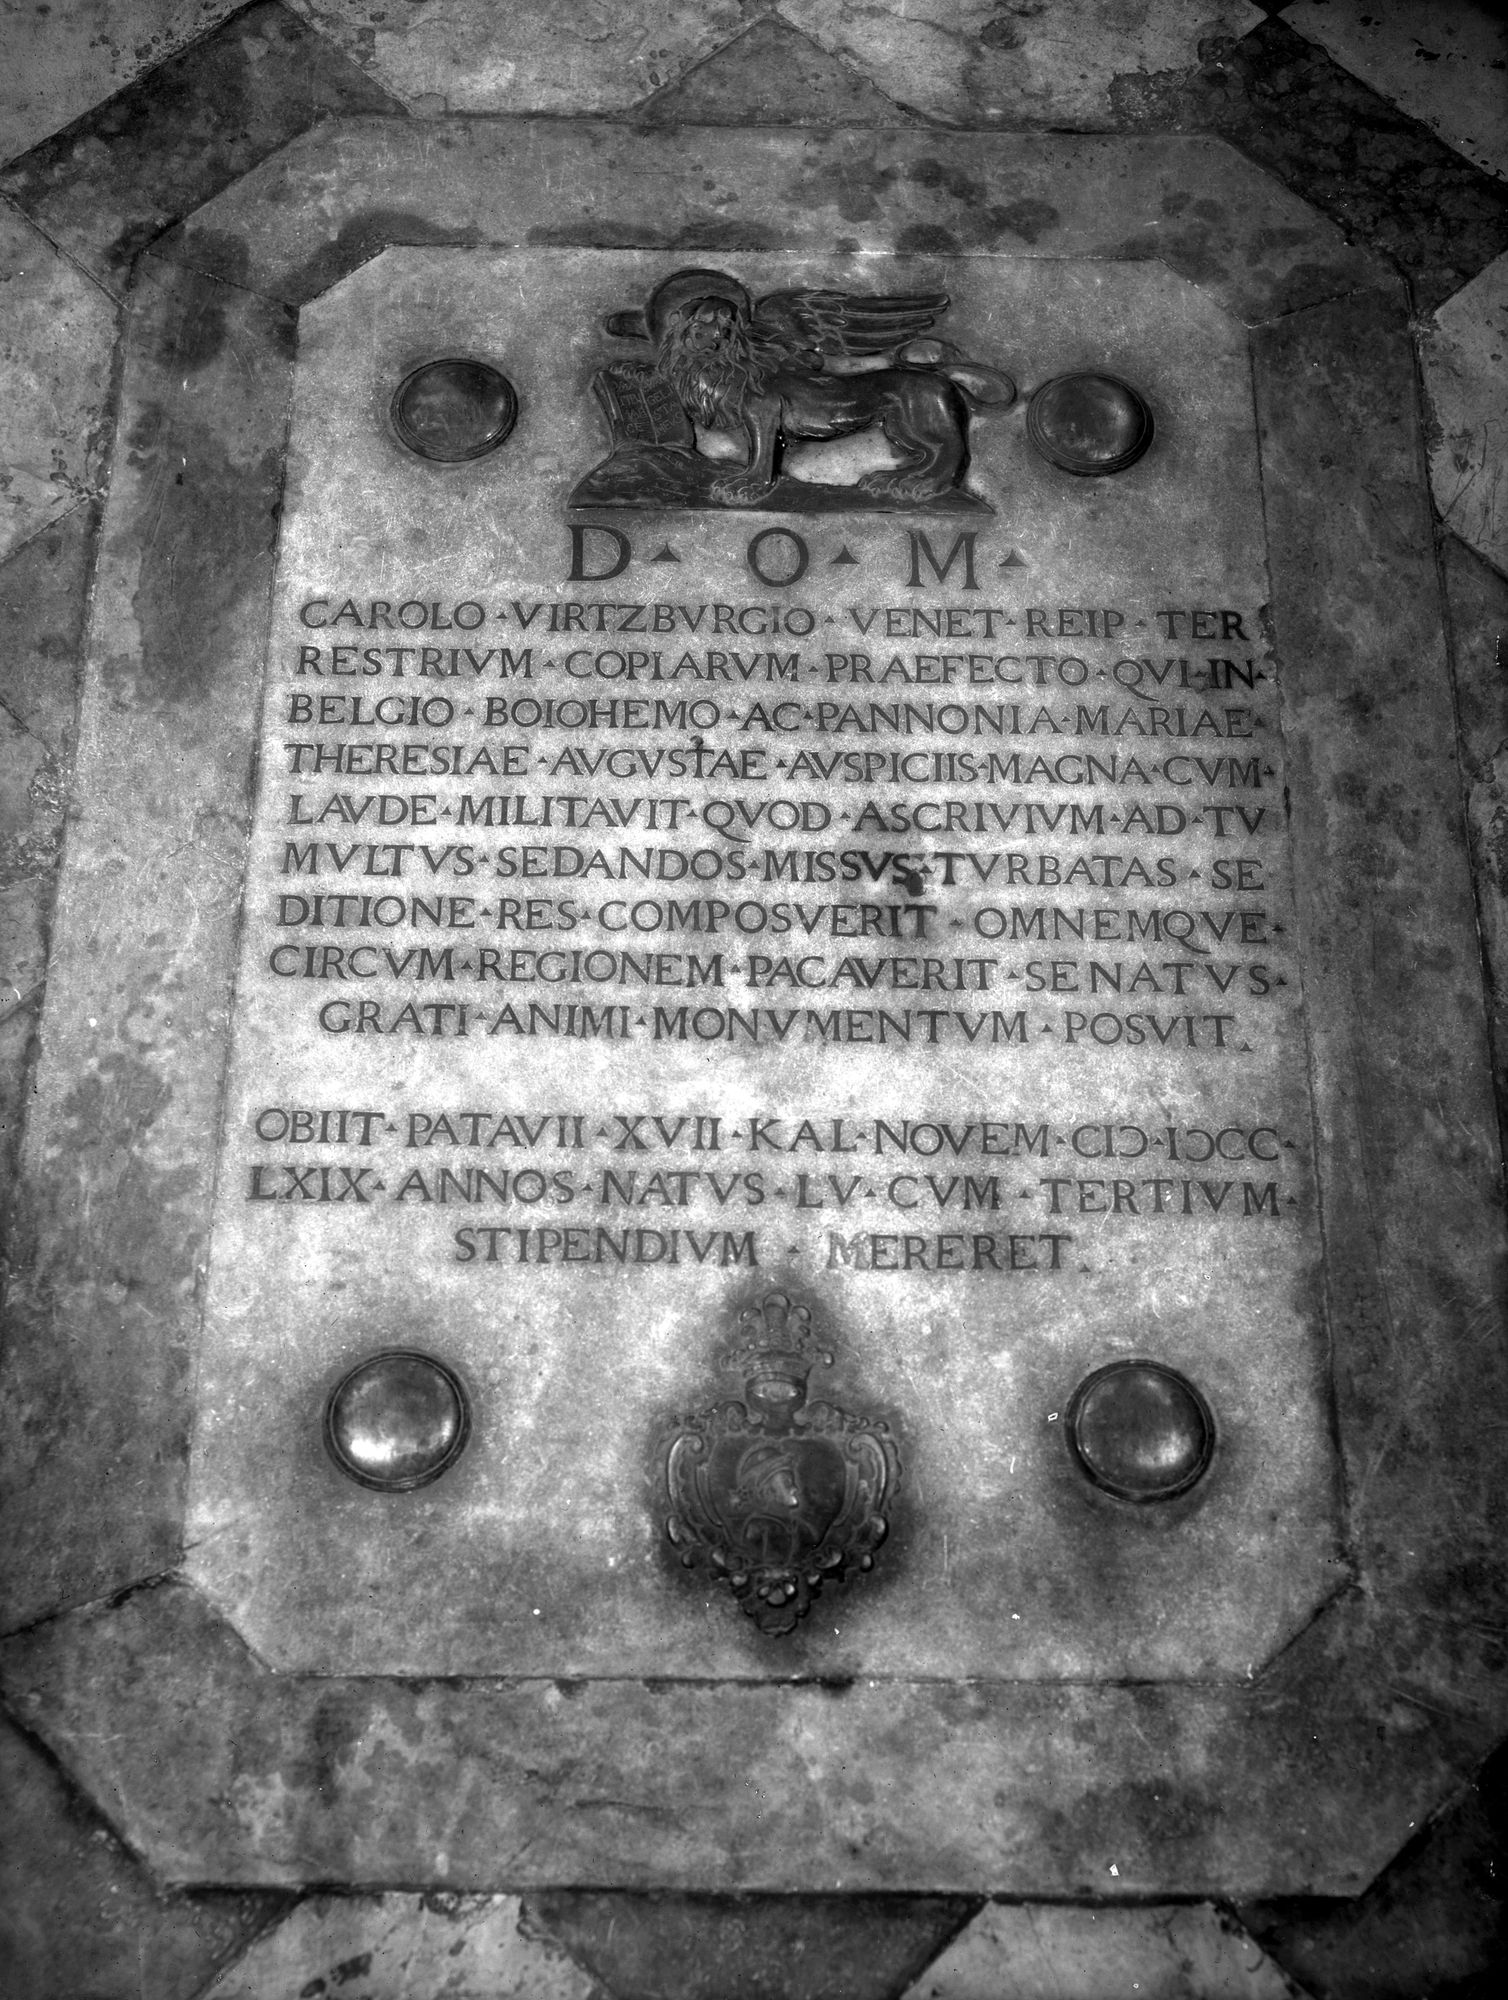 Santa Sofia. Lastra tombale di Carolo Virtzangio (negativo) di Gabinetto fotografico (XX)